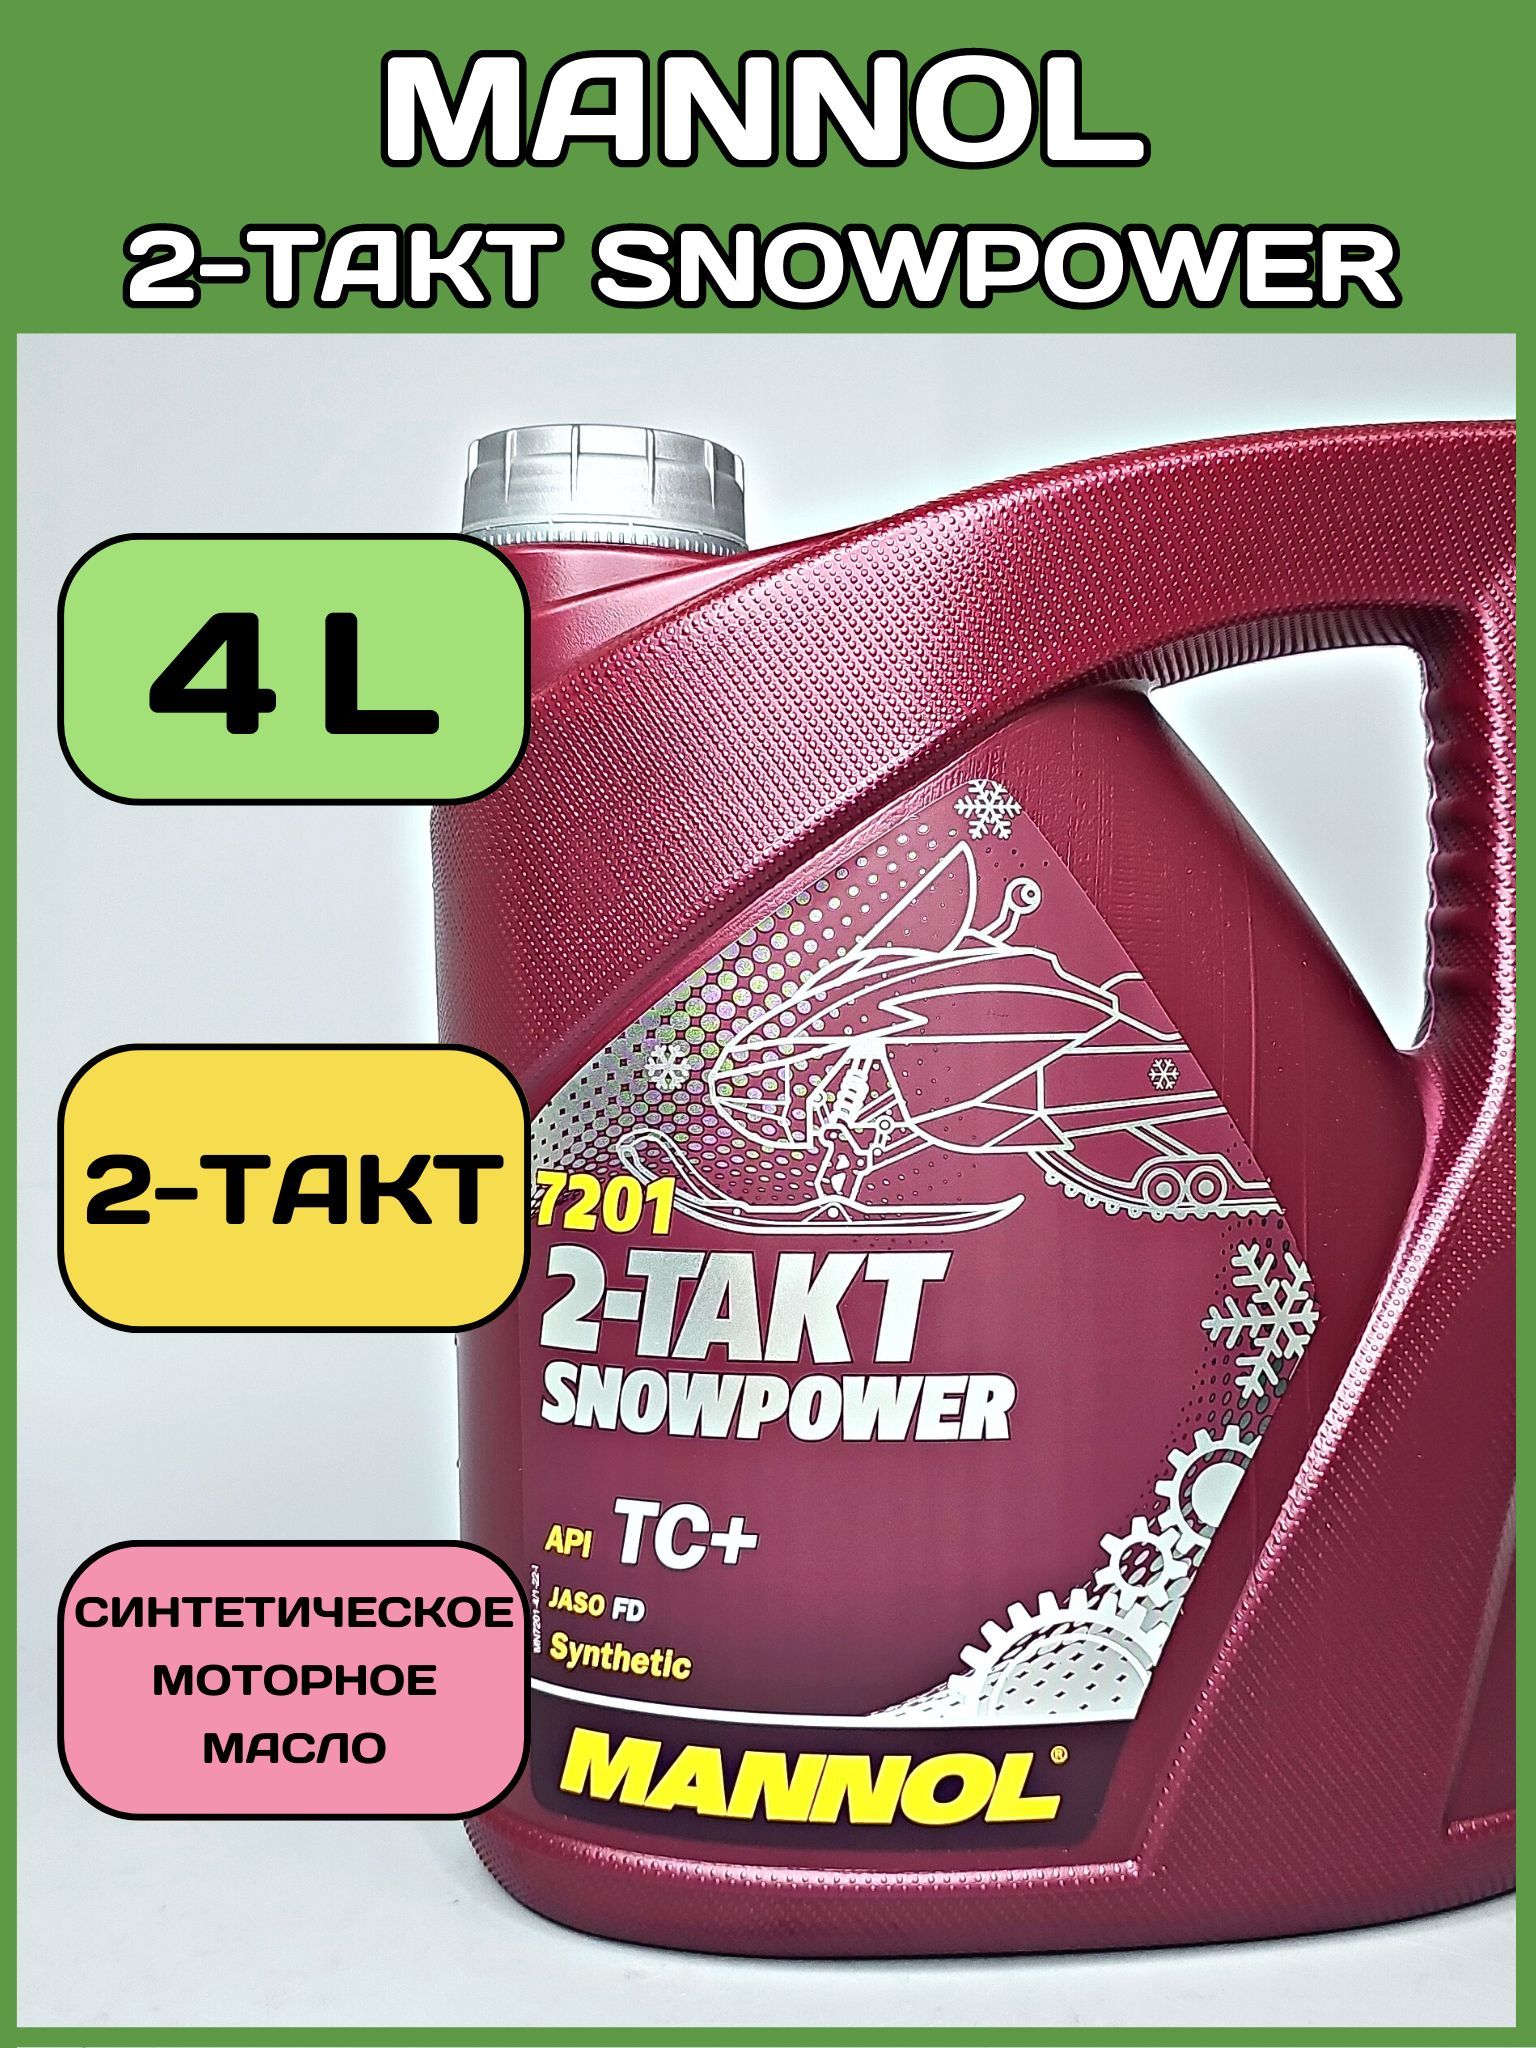 2т полусинтетическое масло. Annol масло моторное 2-Takt Snowpower. Масло 2т синтетика. Annol масло моторное 20 л. 2-Takt Snowpower.